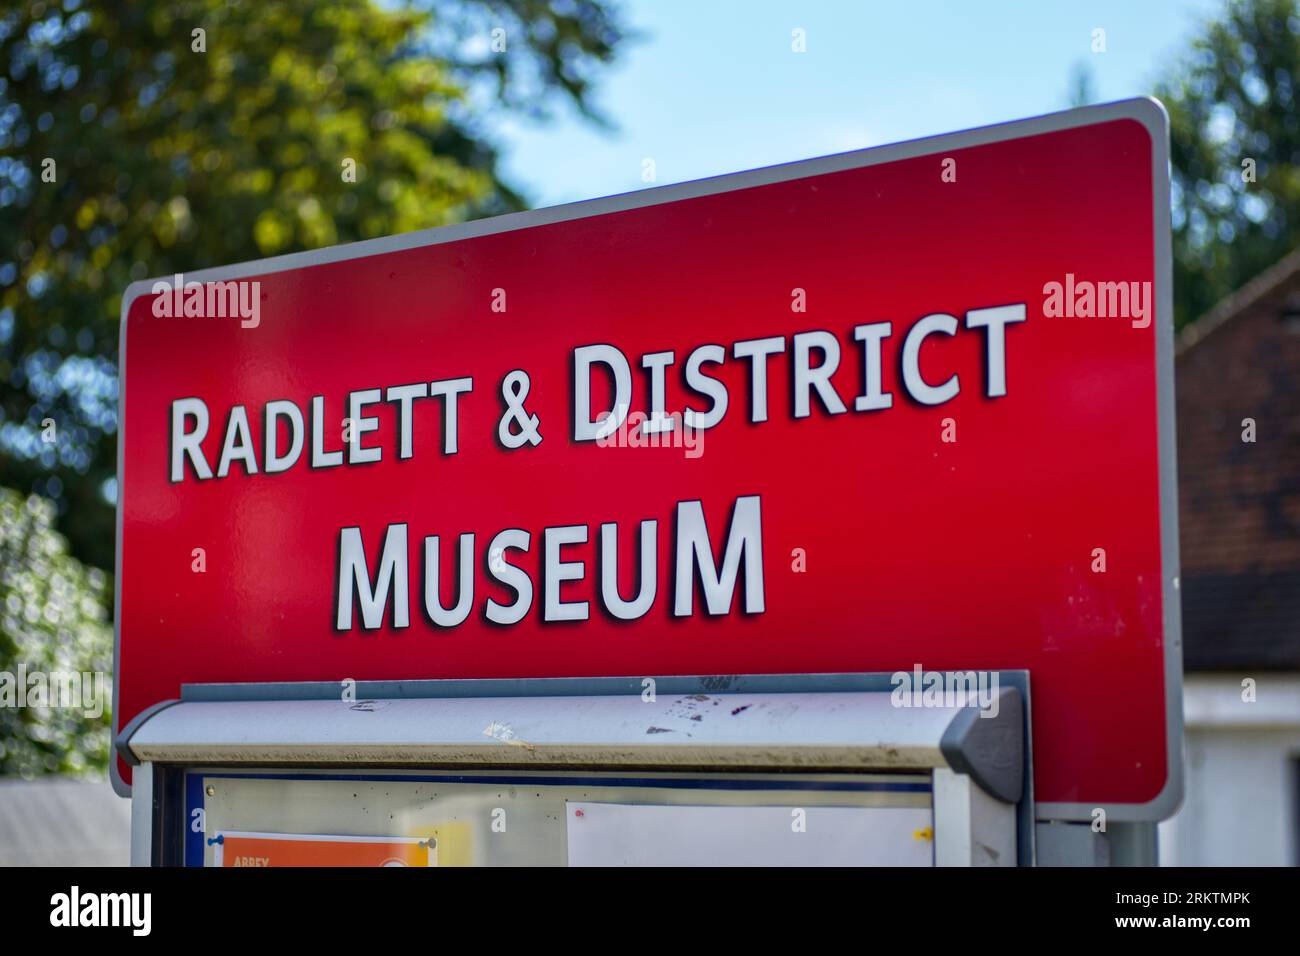 Radlett & District Museum sign, Radlett, Hertfordshire, England, UK Stock Photo